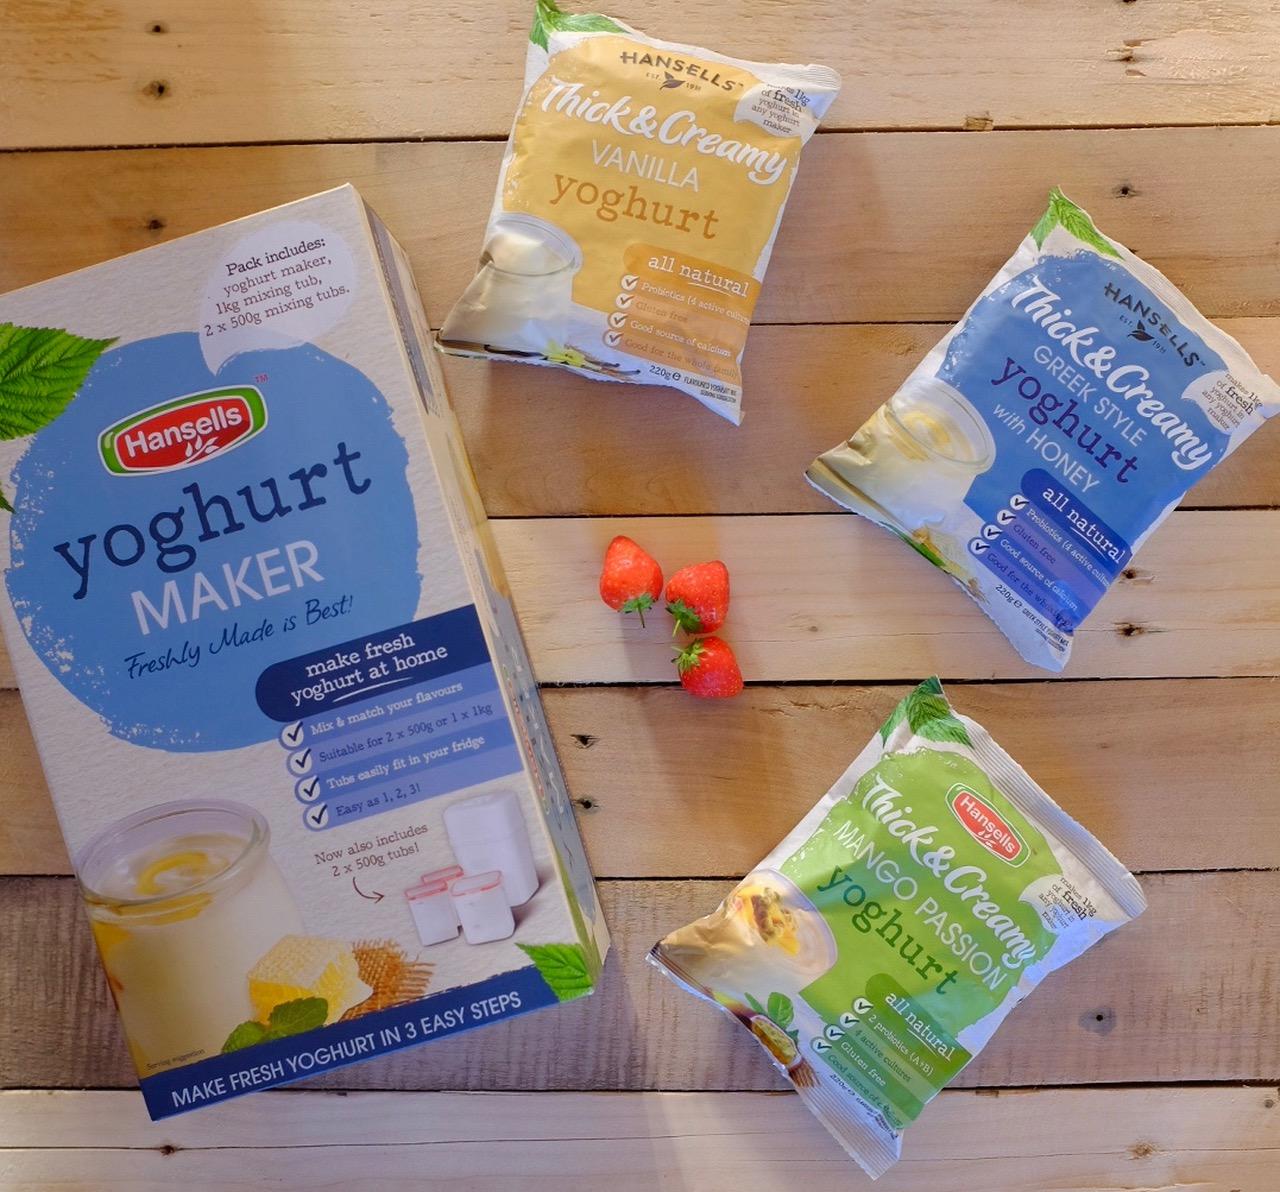 Hansells Yoghurt Maker and packs